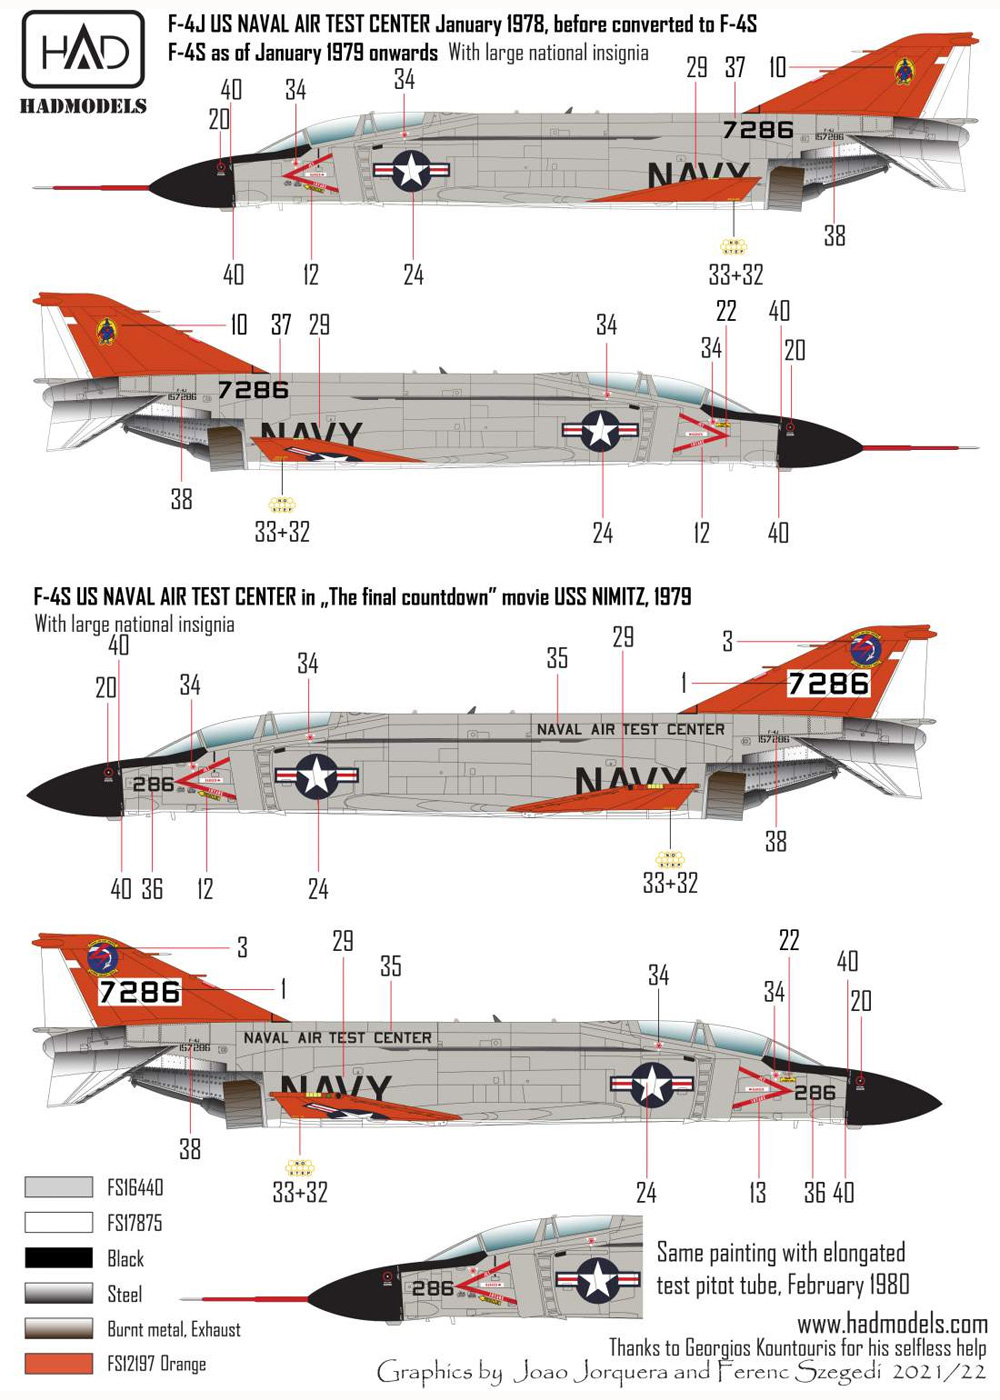 F-4S/J ファントム 2 海軍航空試験センター ファイナル・カウントダウン デカール デカール (HAD MODELS 1/72 デカール No.72255) 商品画像_2